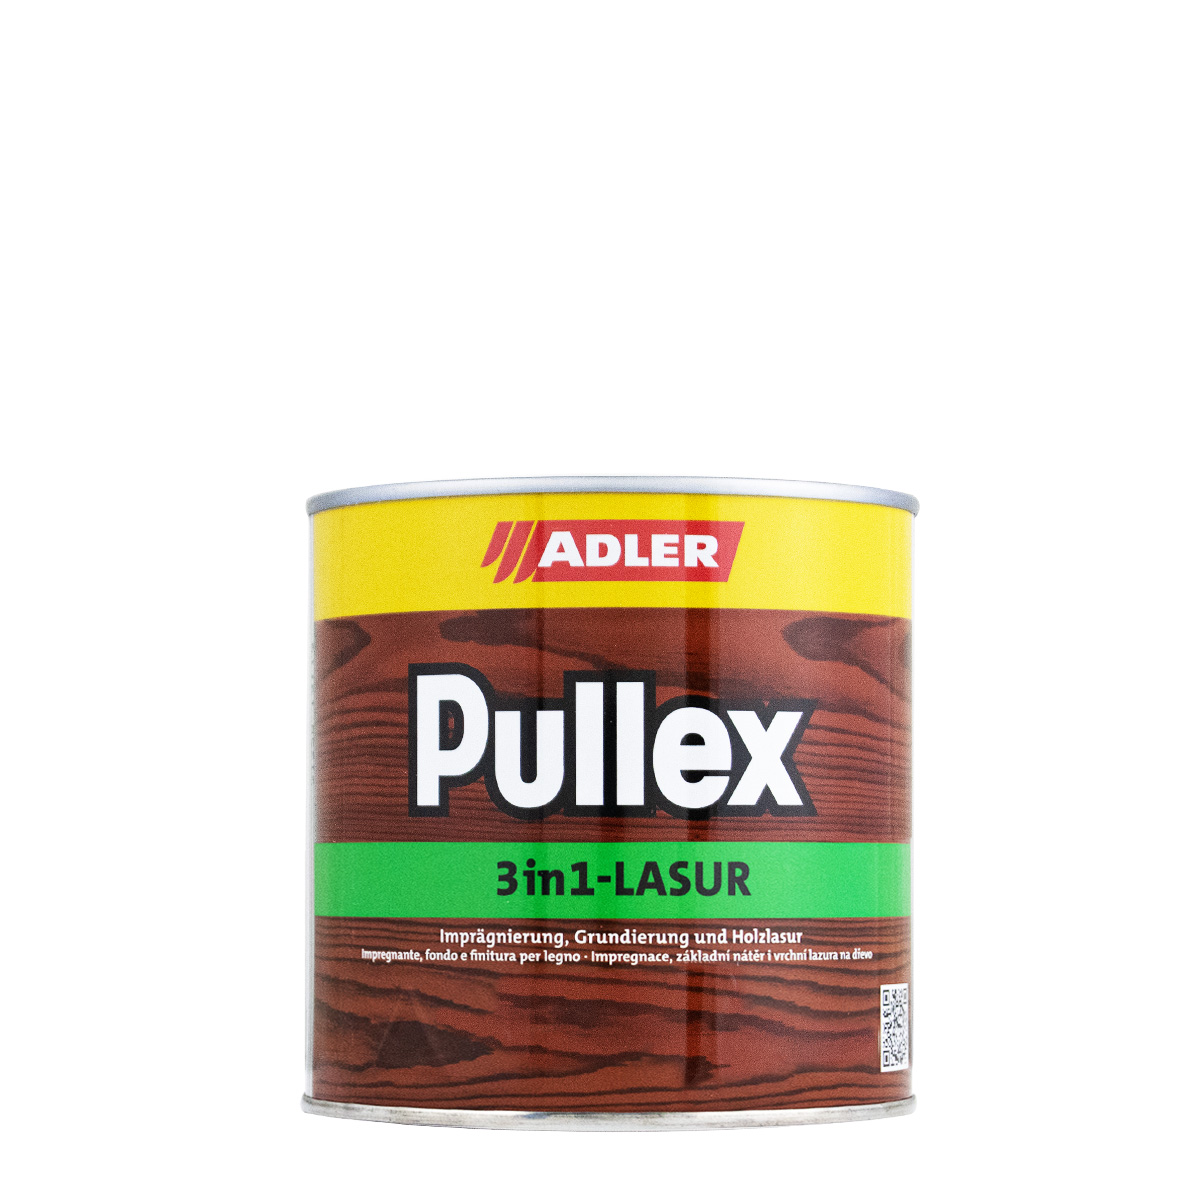 adler_pullex_3in1_750ml_holzlasur_gross